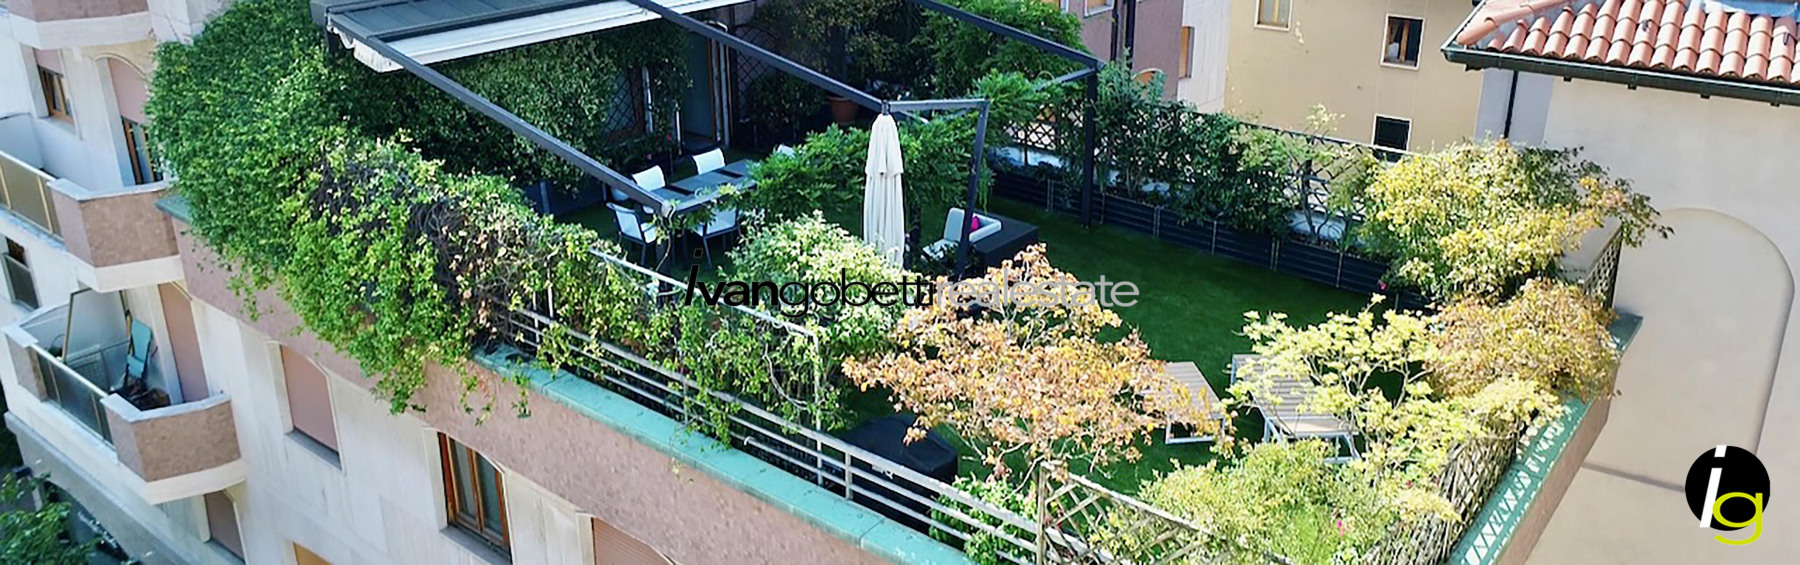 Charmantes Apartment mit Terrasse im Zentrum von Varese<br/><span>Produktcode: 100823